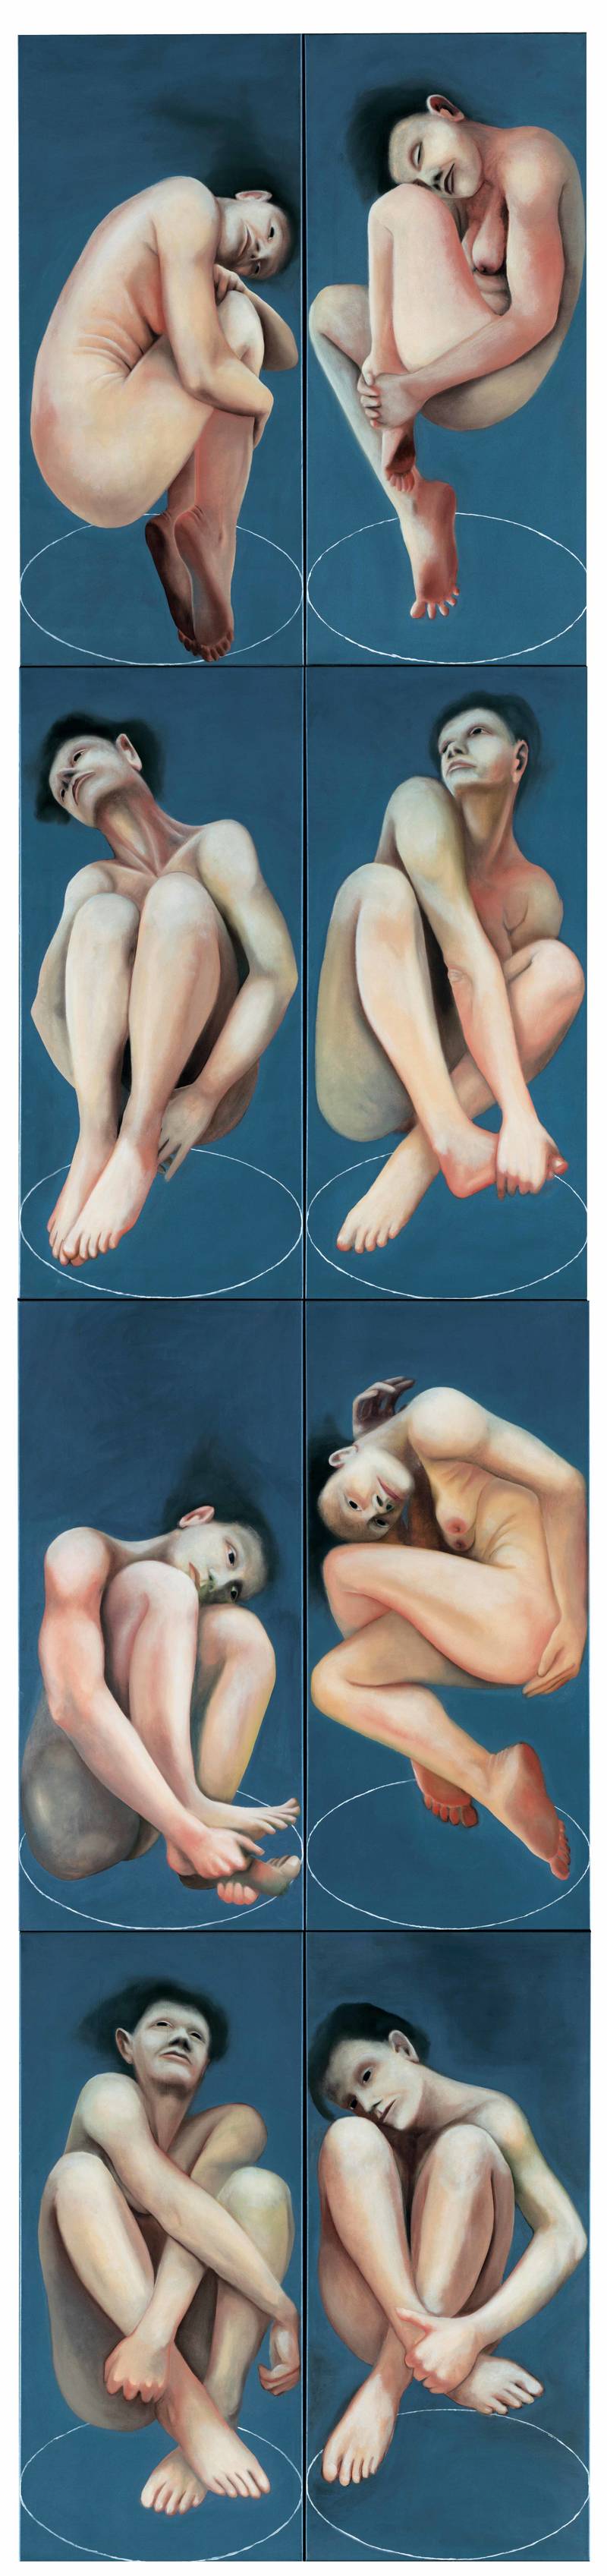 Franziska Rutishauser, Malerei: Konserven, 8-teilig, 1995, Öl auf Baumwolle, 400x90cm